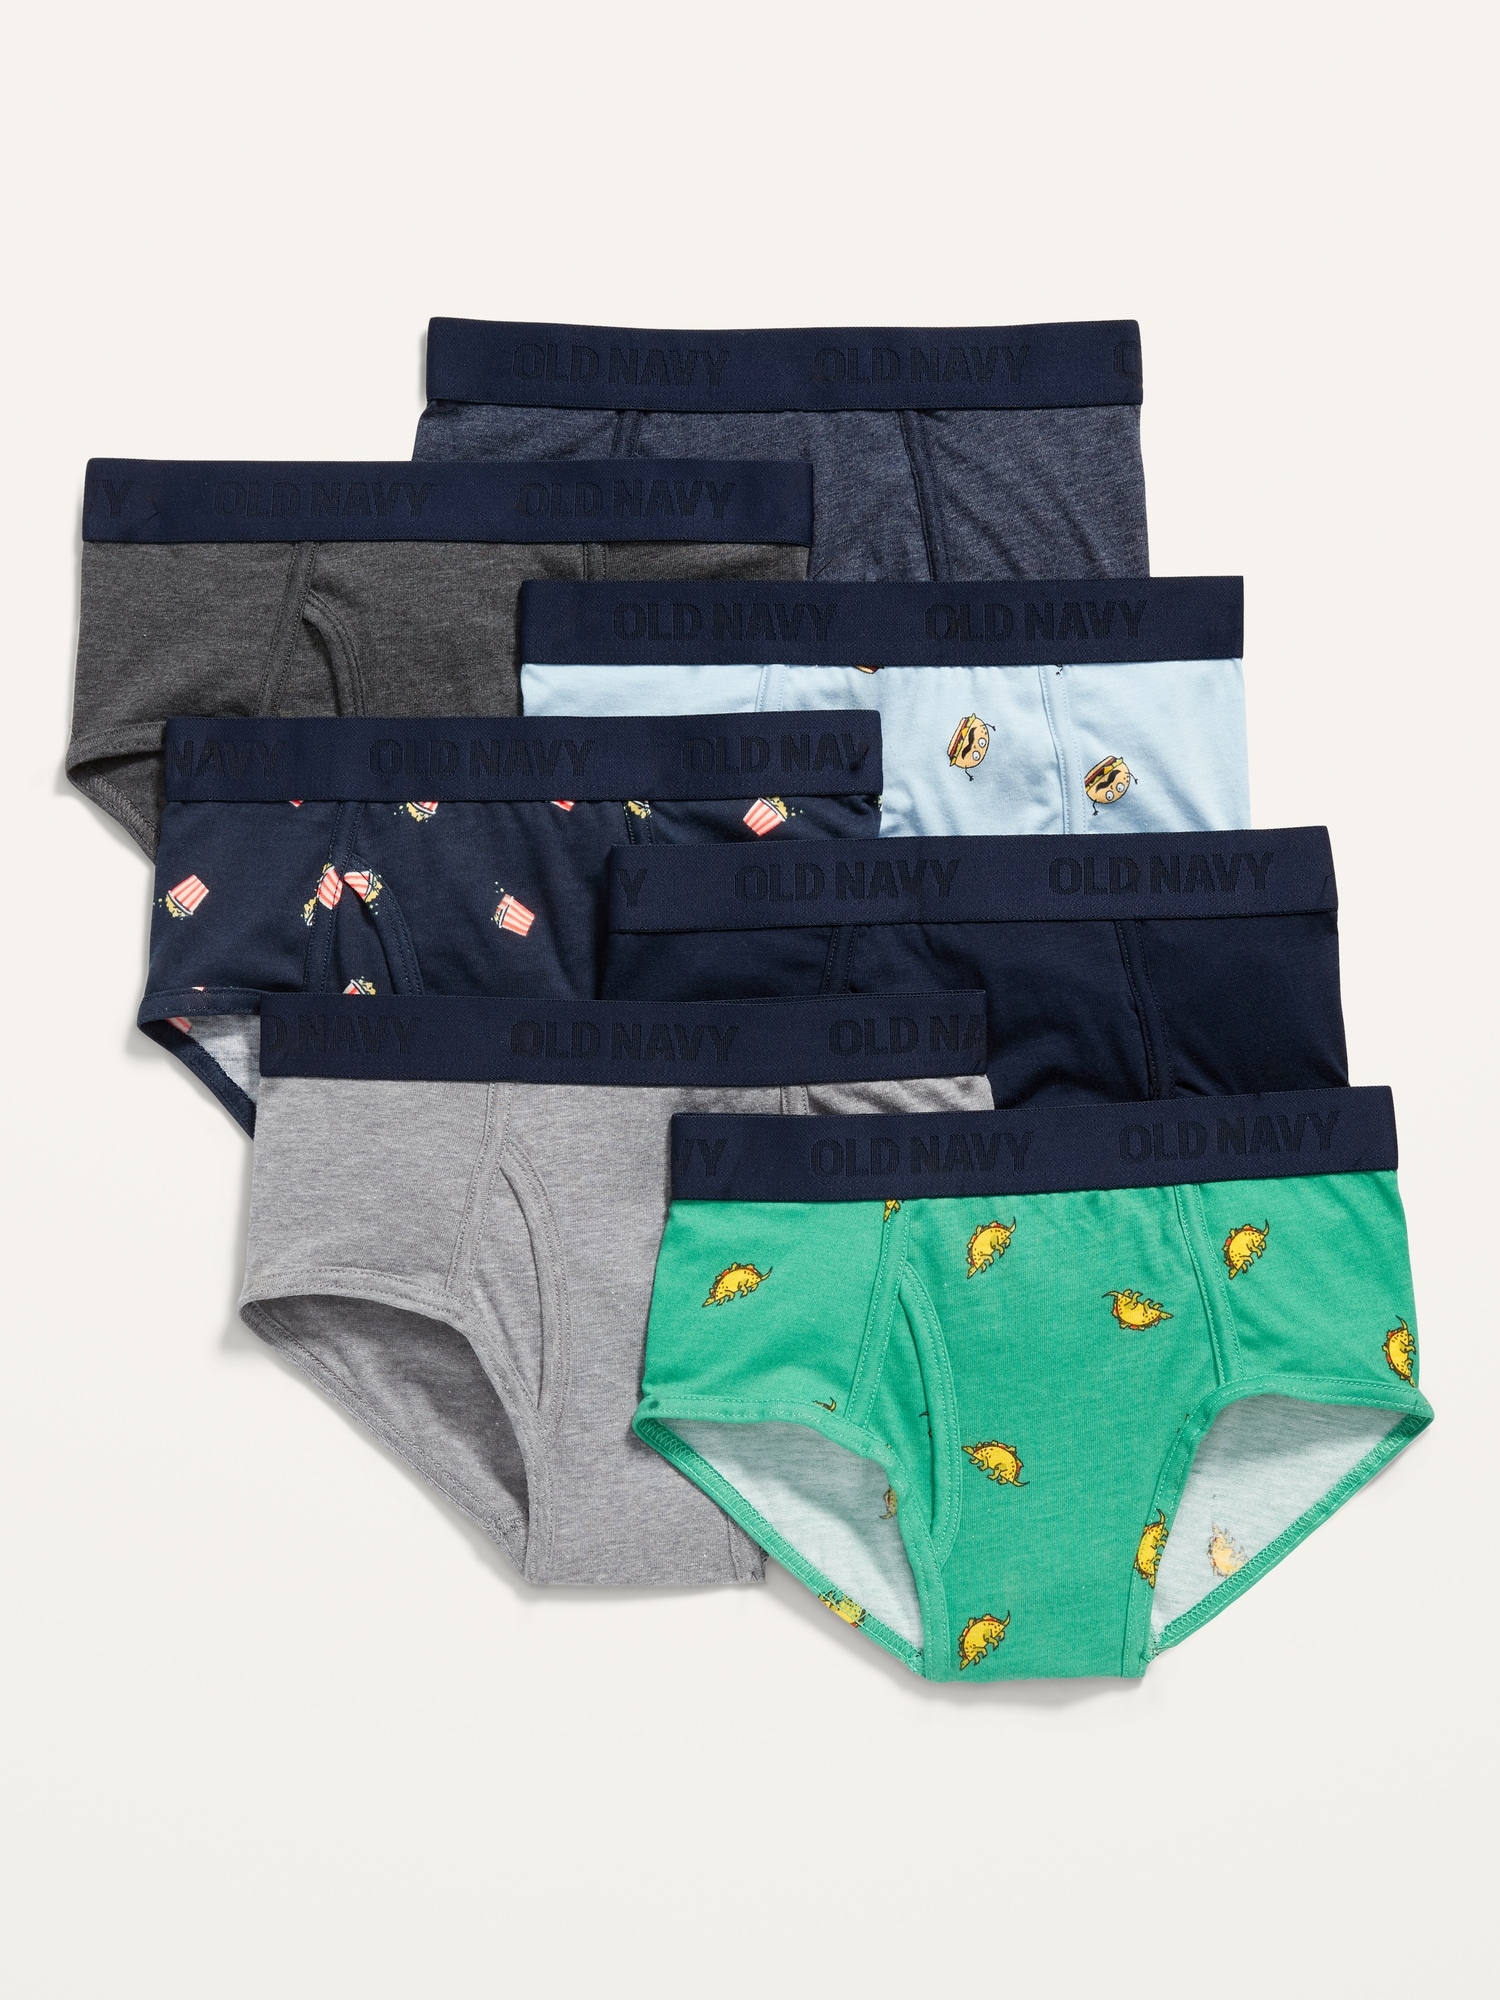 New Gap Kids Boys 7 Pack 100%Cotton Underwear Brief, Nautical Theme, 8  year, M 